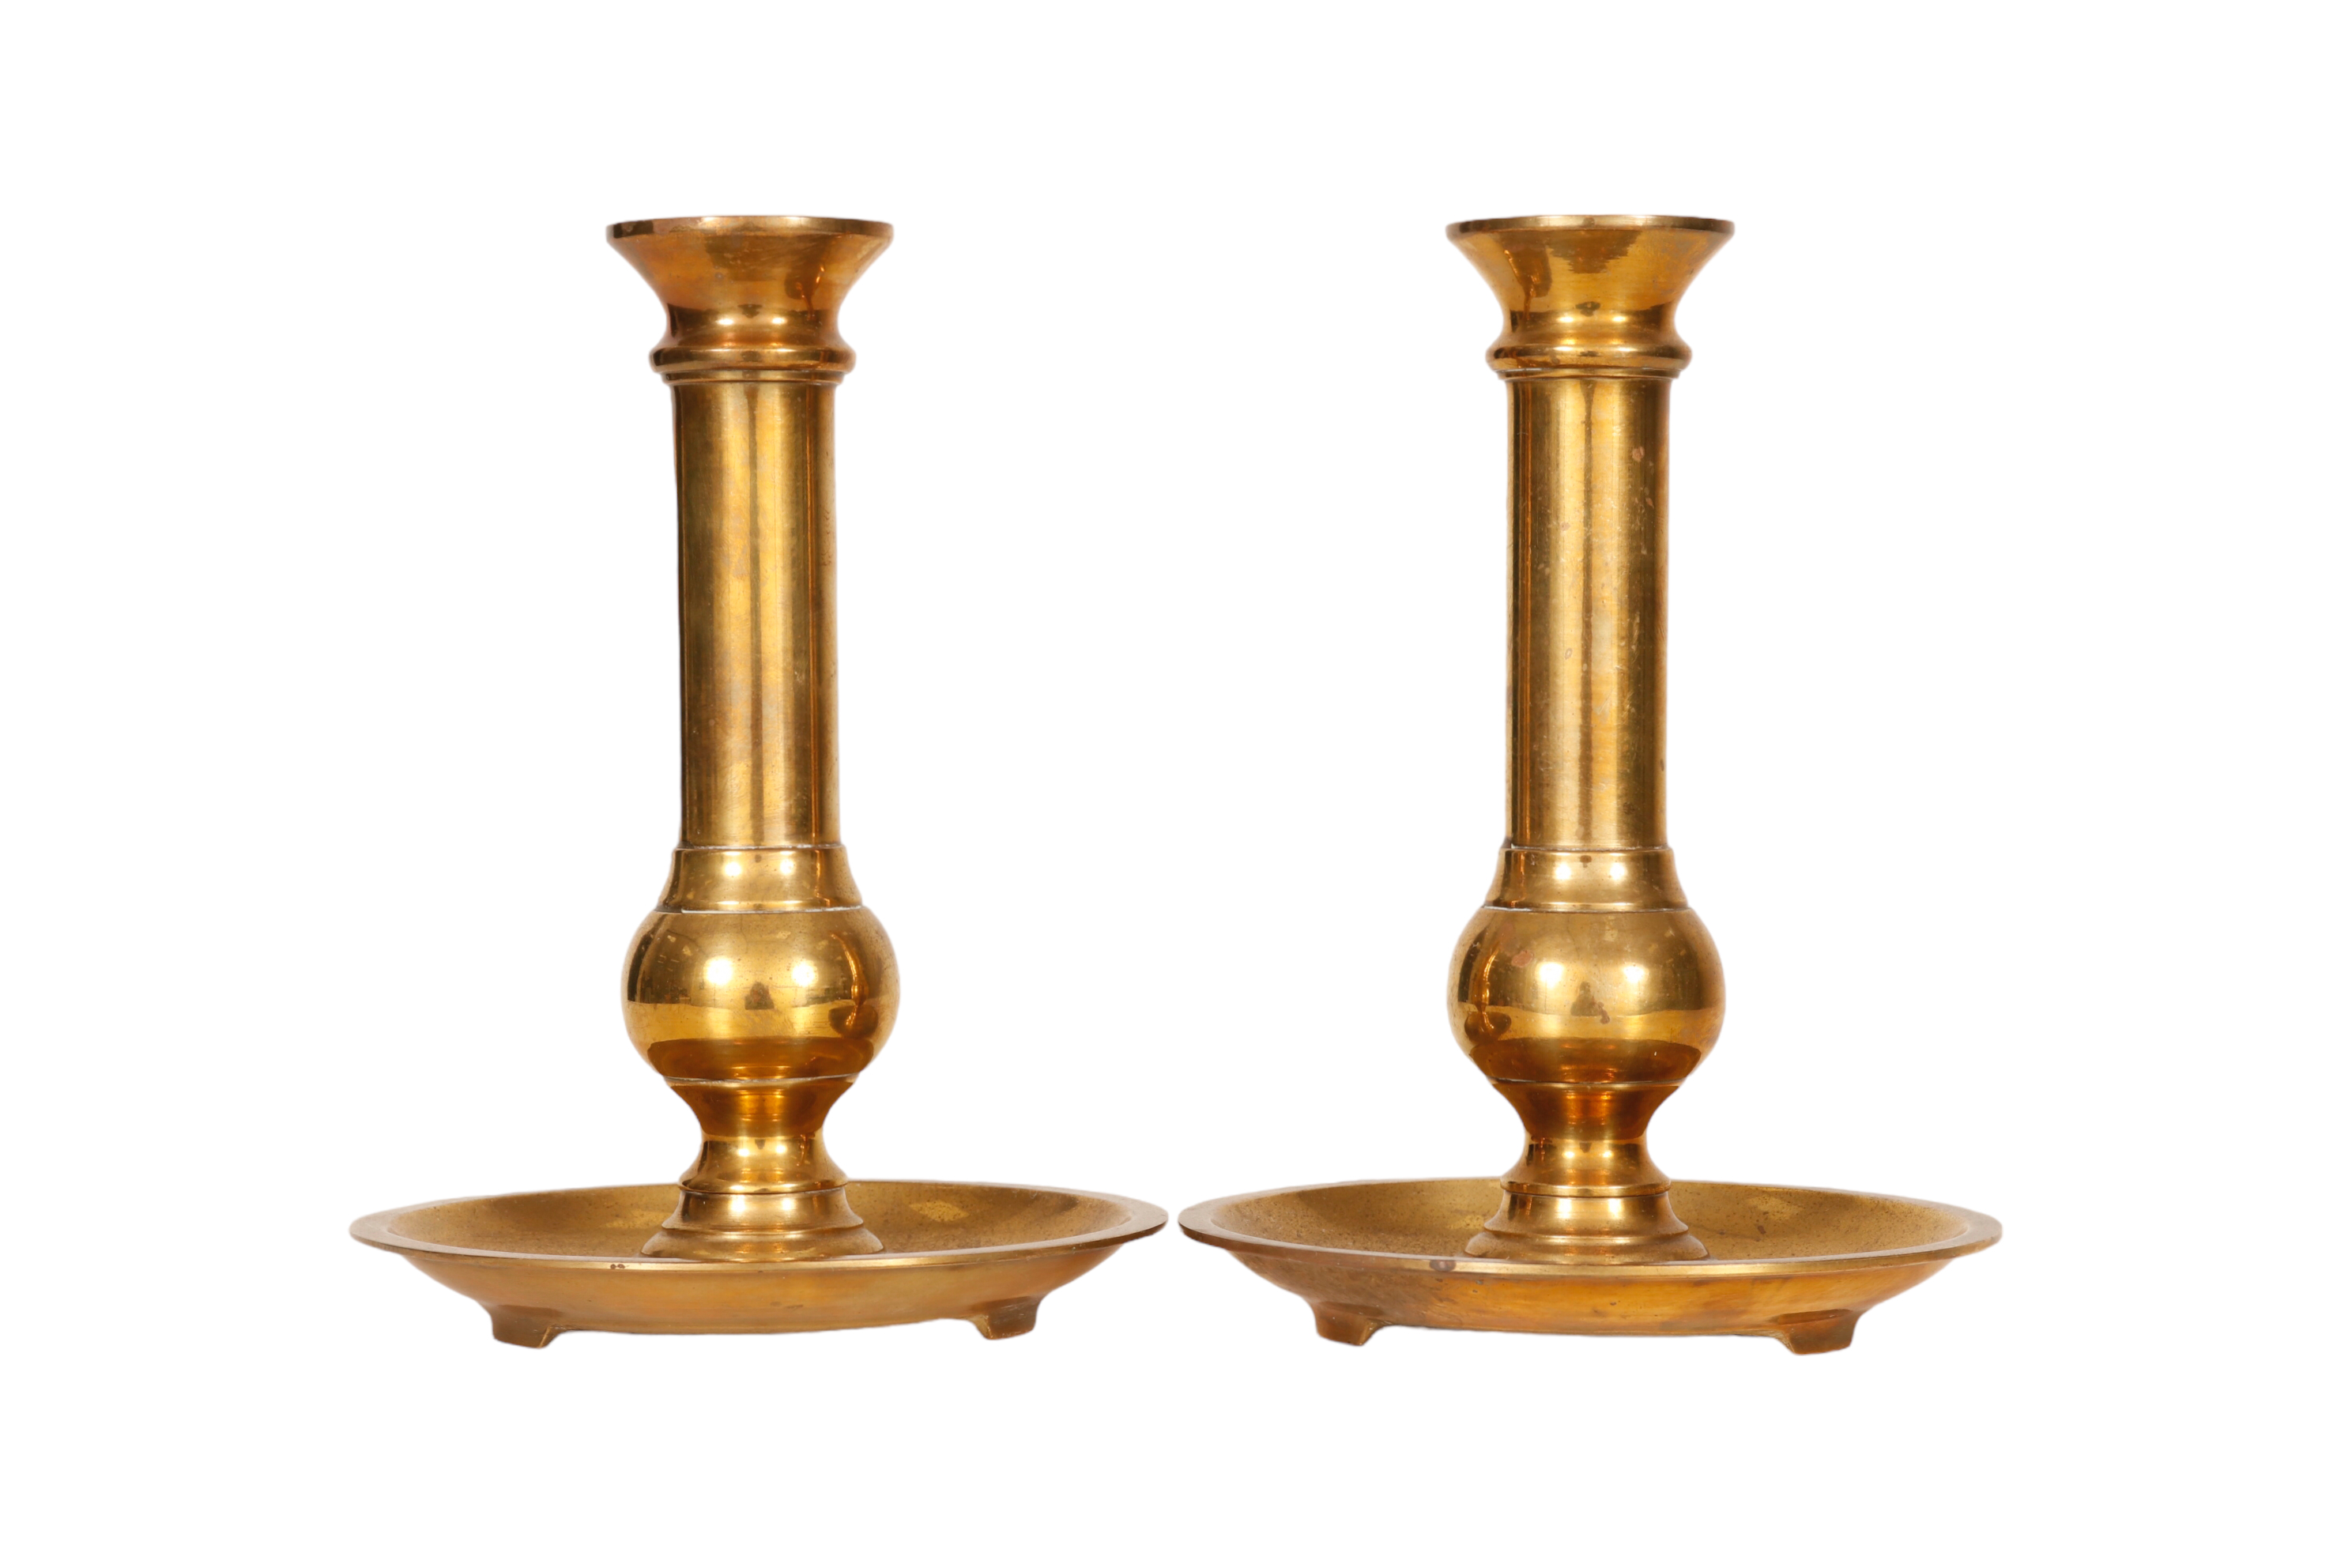 Neiman Marcus Brass Candlesticks, a Pair~P77686862